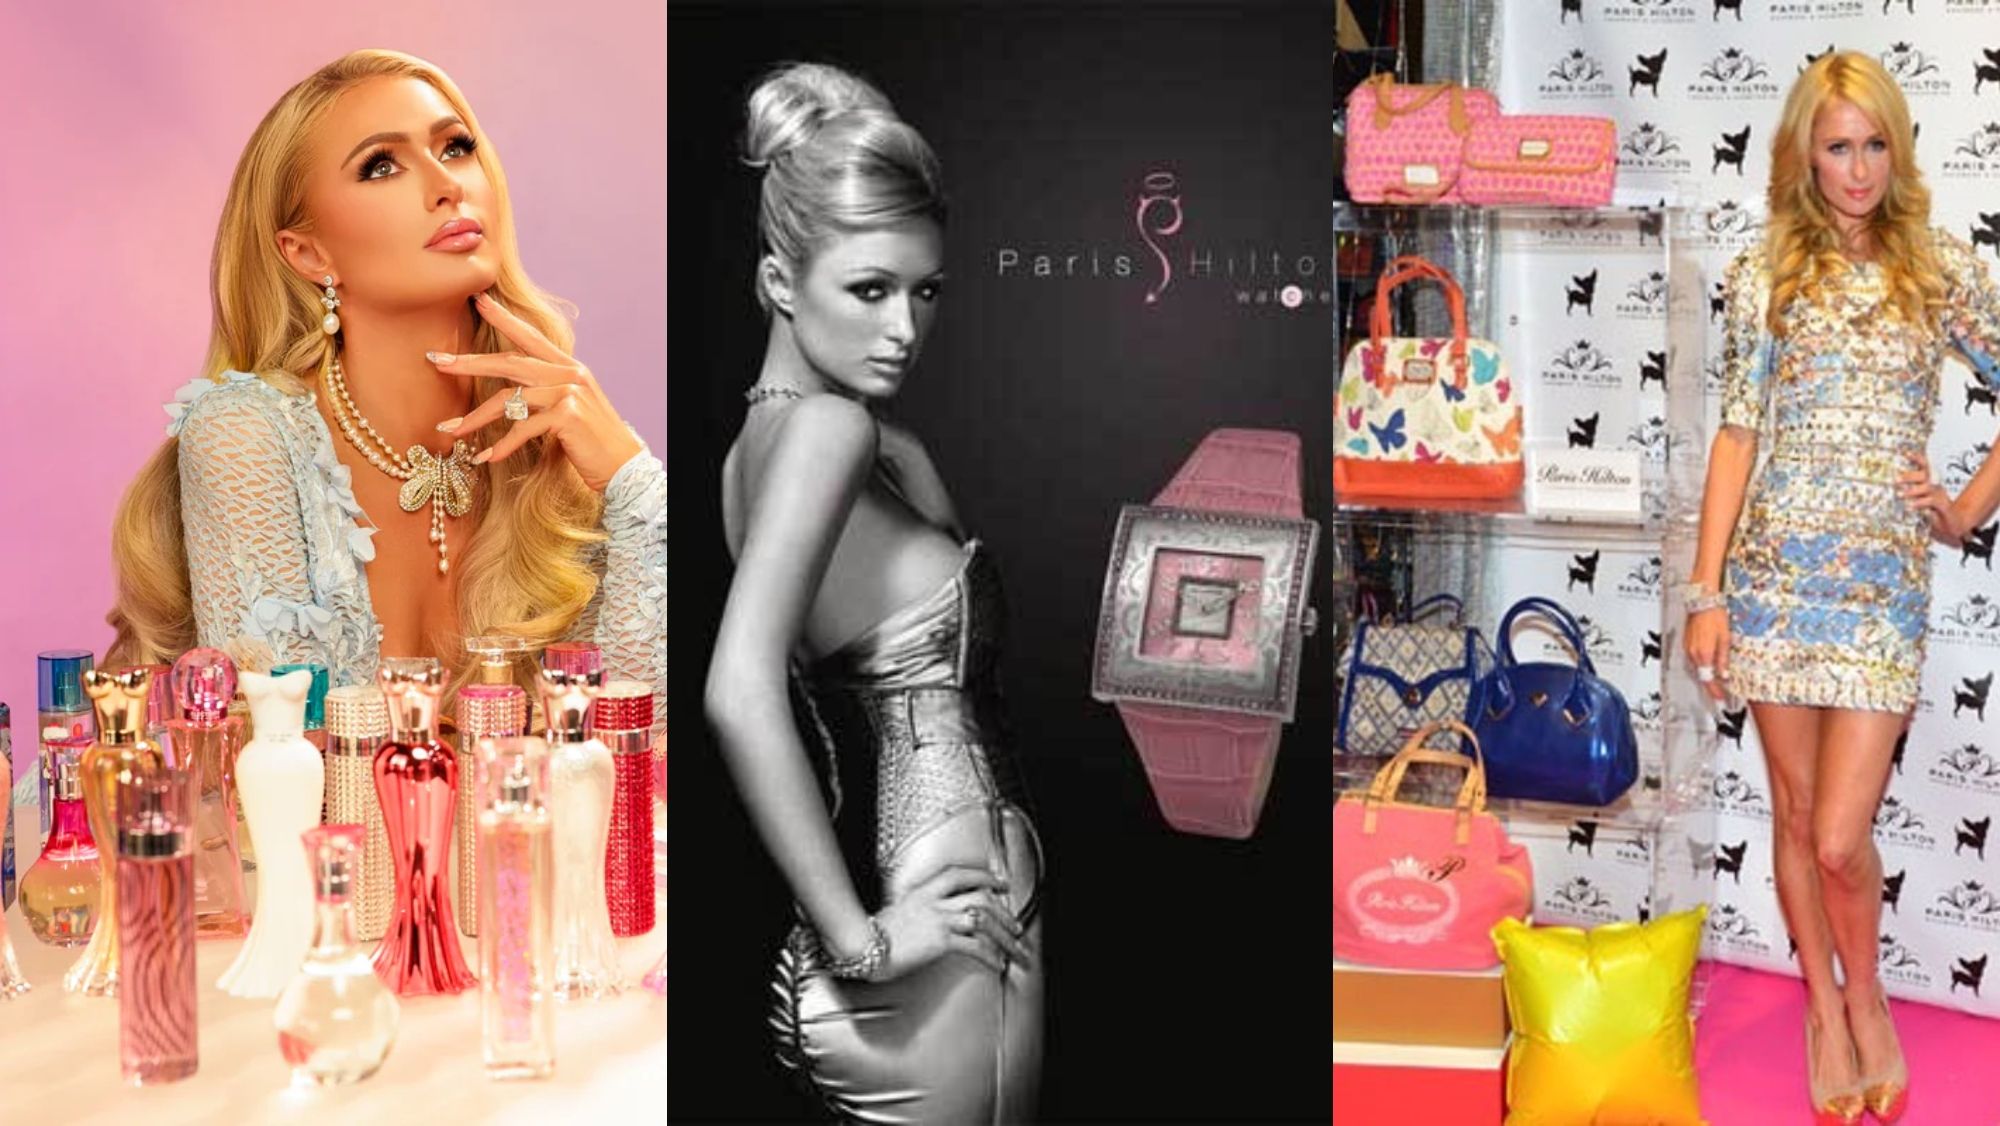 Fragancias, relojes y bolsos de Paris Hilton